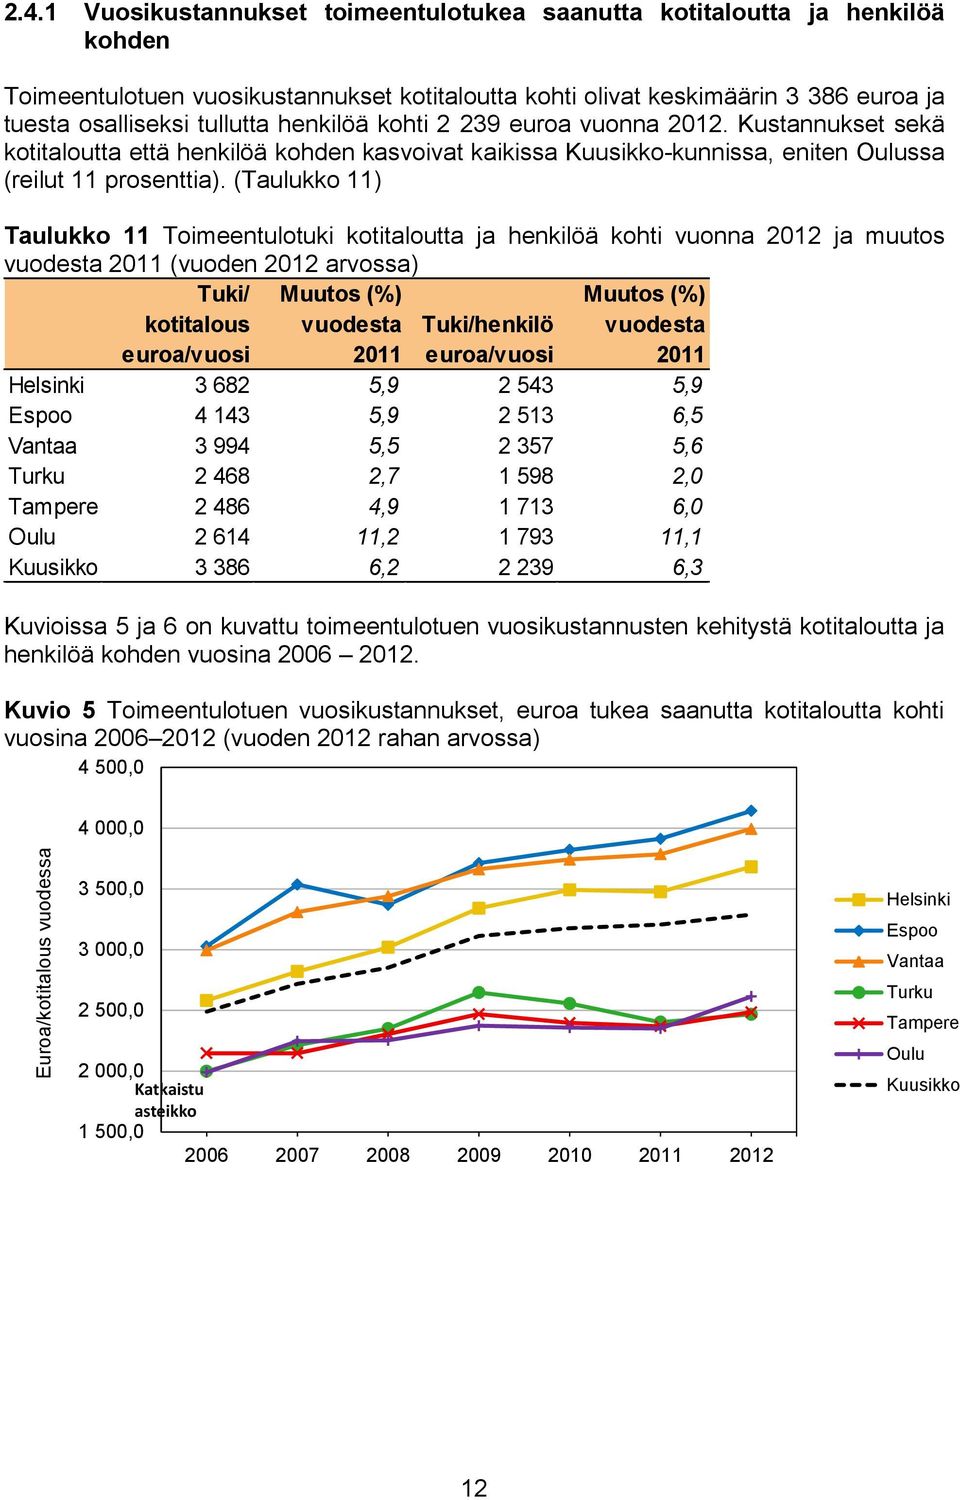 henkilöä kohti 2 239 euroa vuonna 2012. Kustannukset sekä kotitaloutta että henkilöä kohden kasvoivat kaikissa Kuusikko-kunnissa, eniten Oulussa (reilut 11 prosenttia).